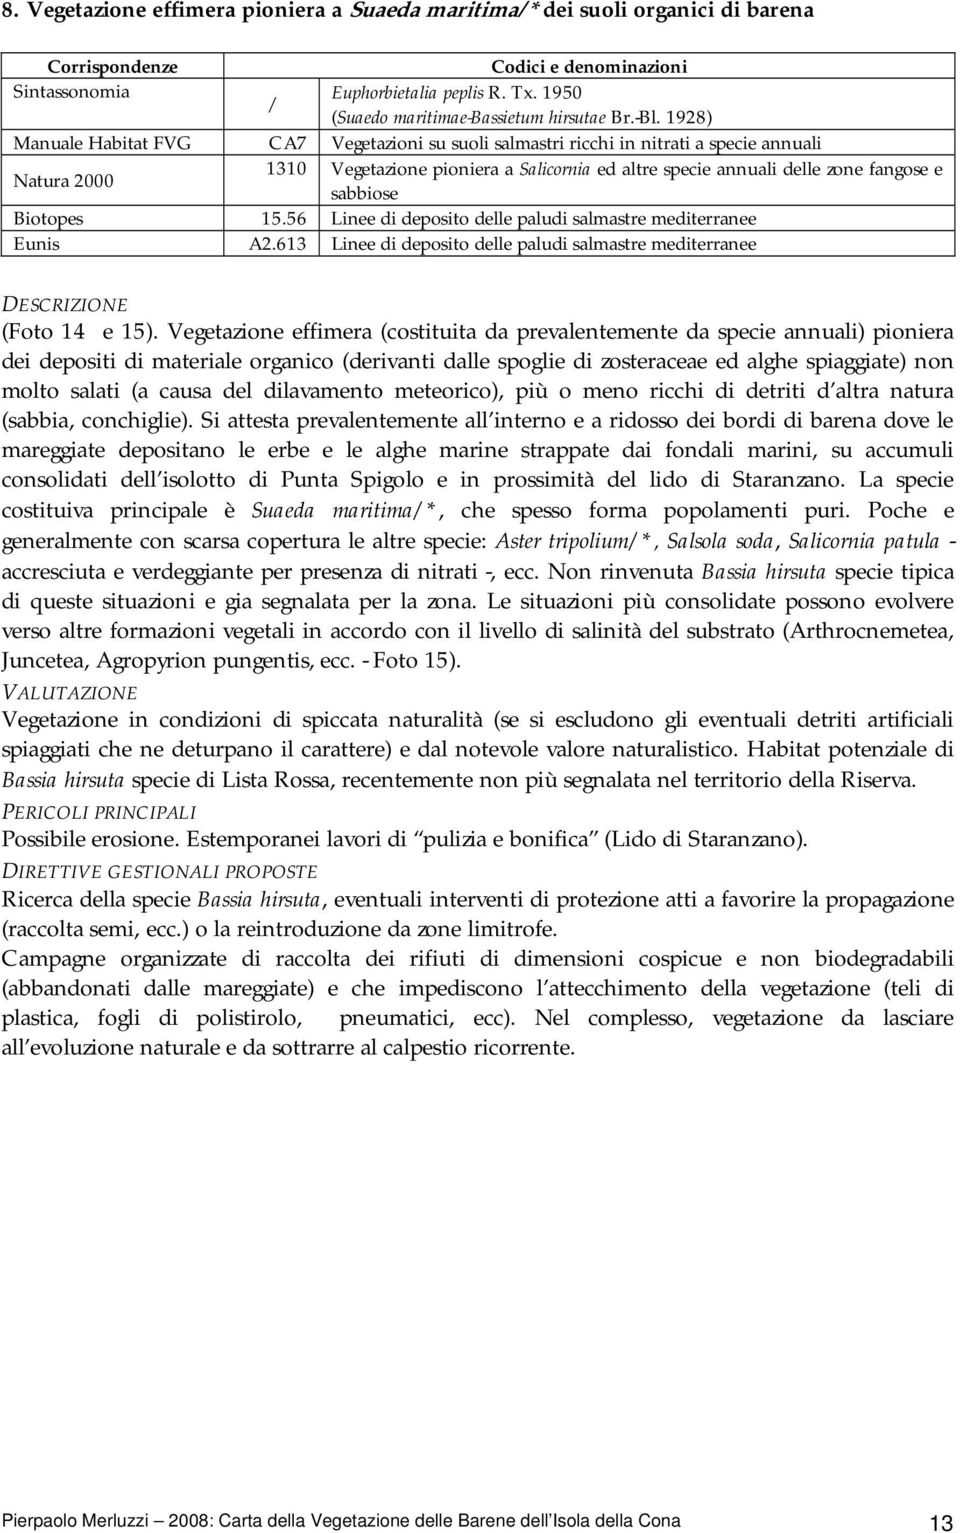 1928) Manuale Habitat FVG CA7 Vegetazioni su suoli salmastri ricchi in nitrati a specie annuali Natura 2000 1310 Vegetazione pioniera a Salicornia ed altre specie annuali delle zone fangose e